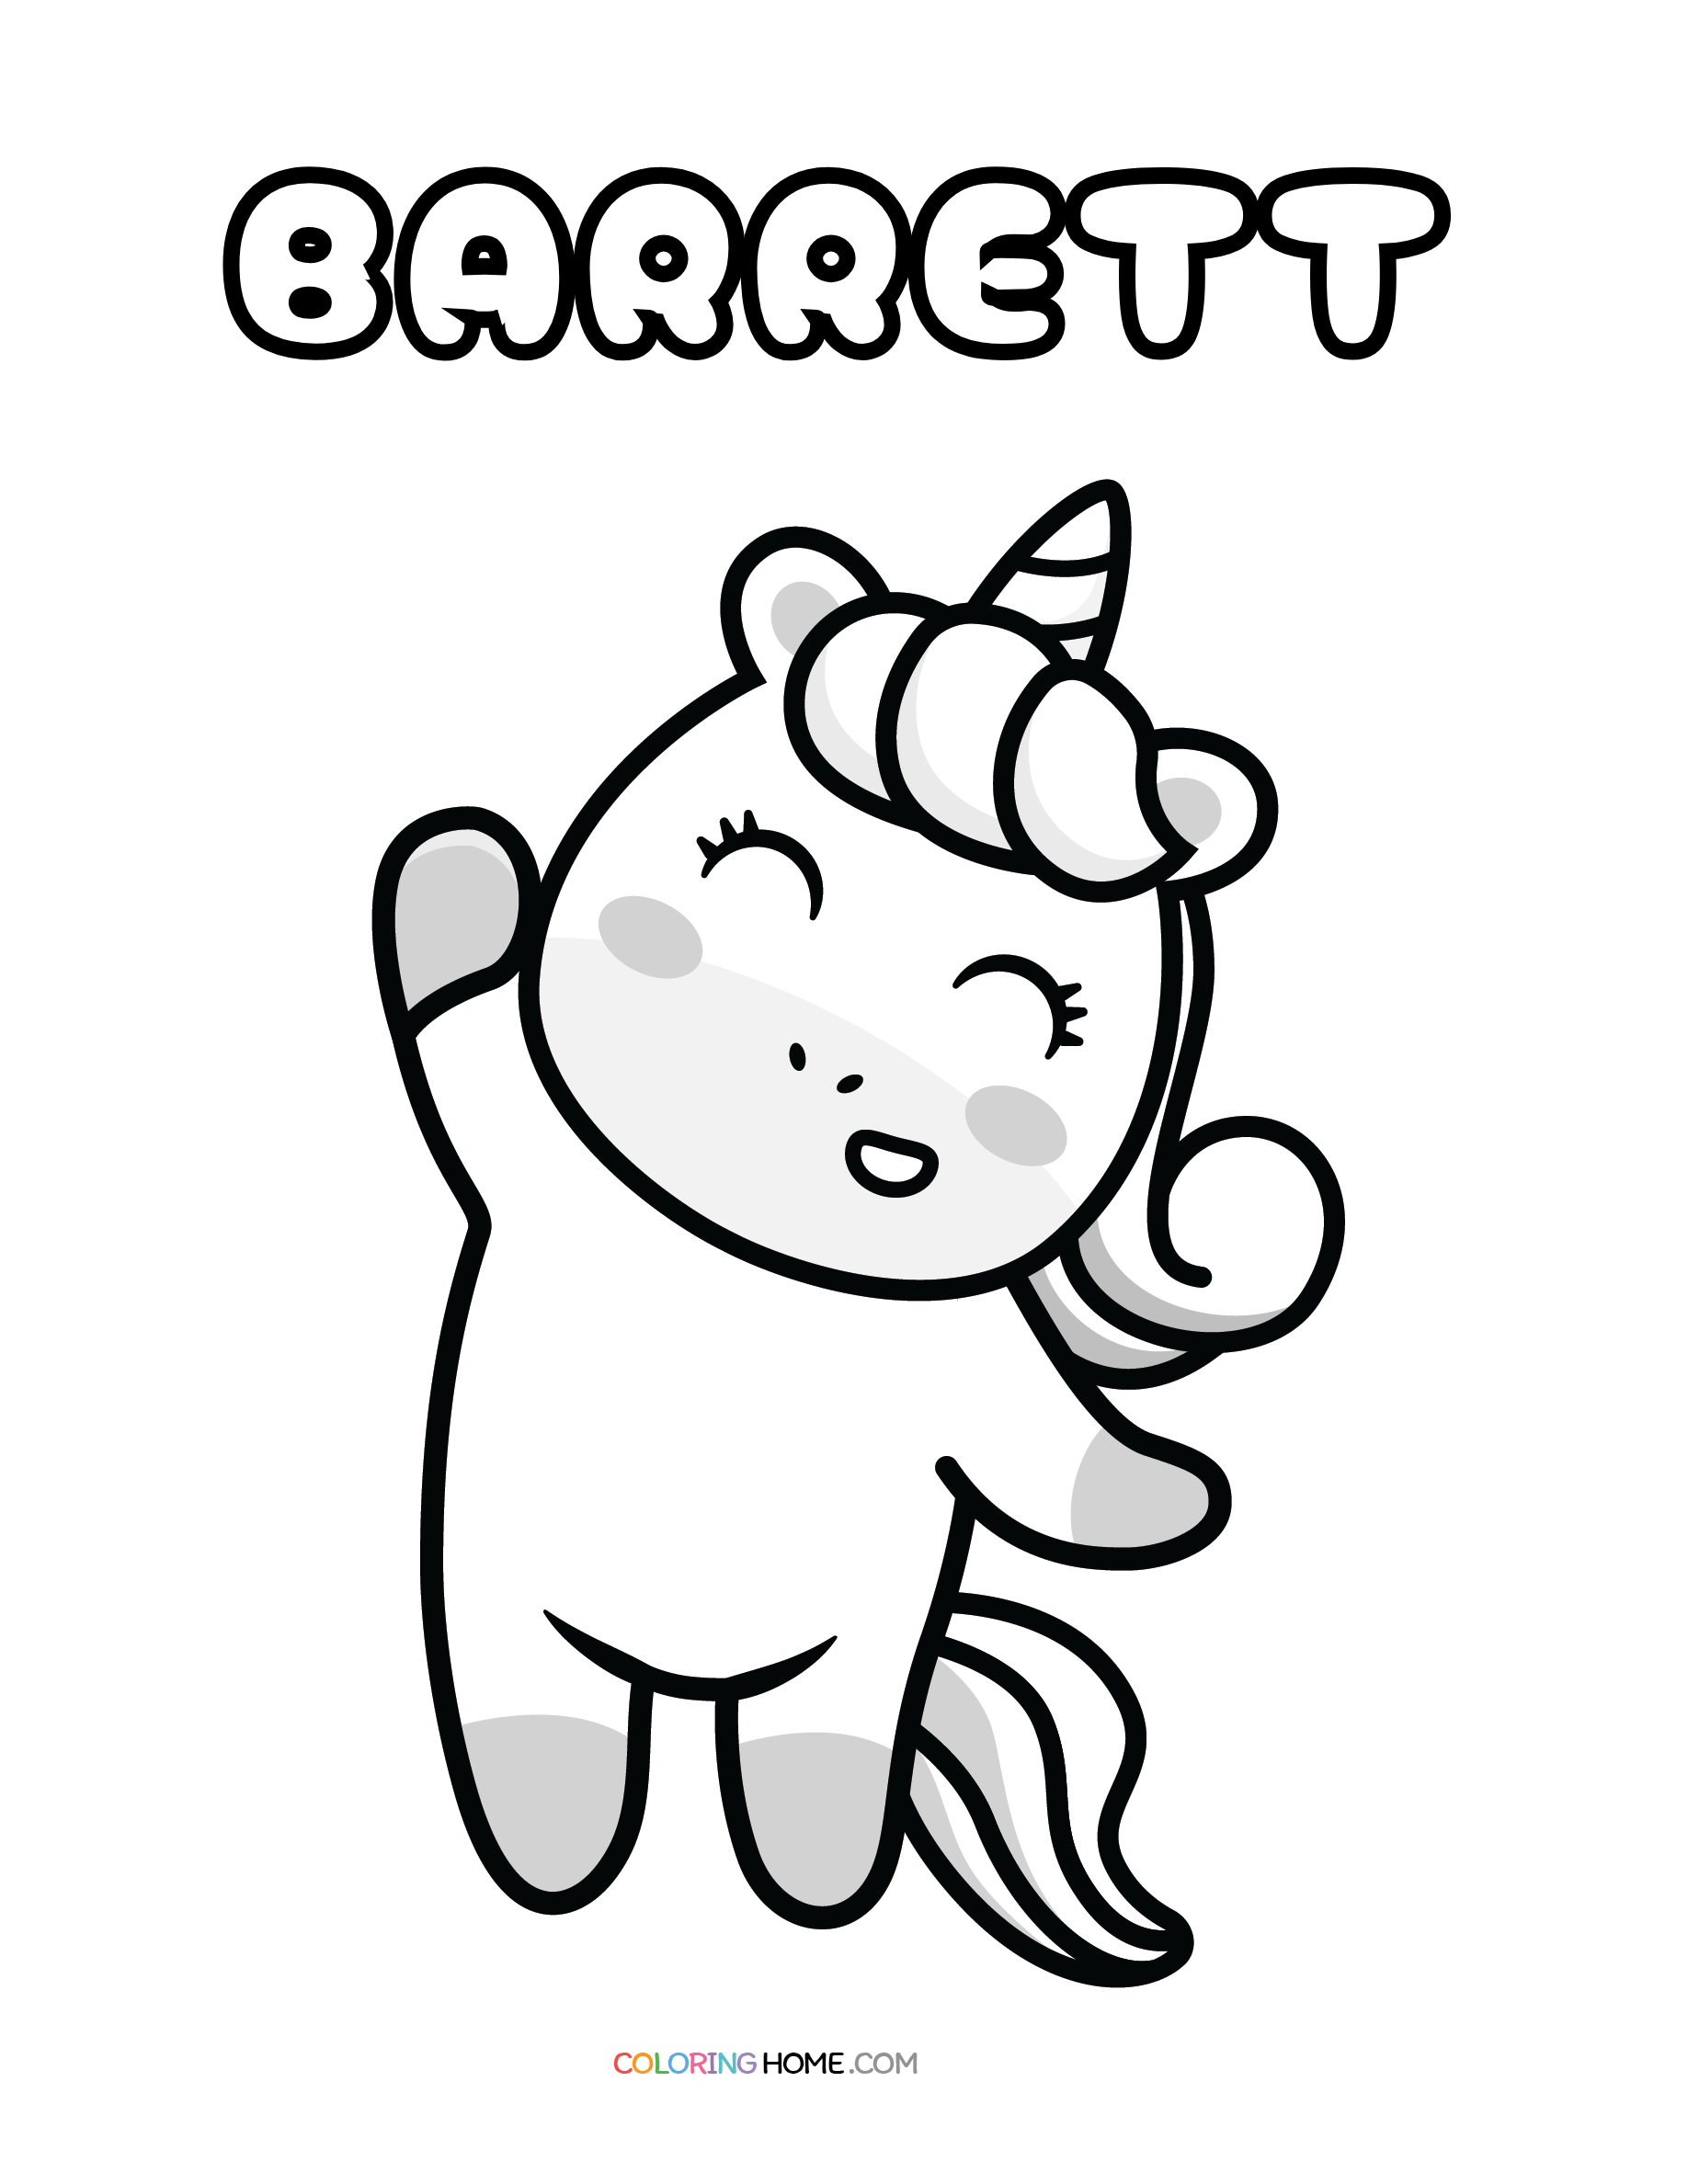 Barrett unicorn coloring page